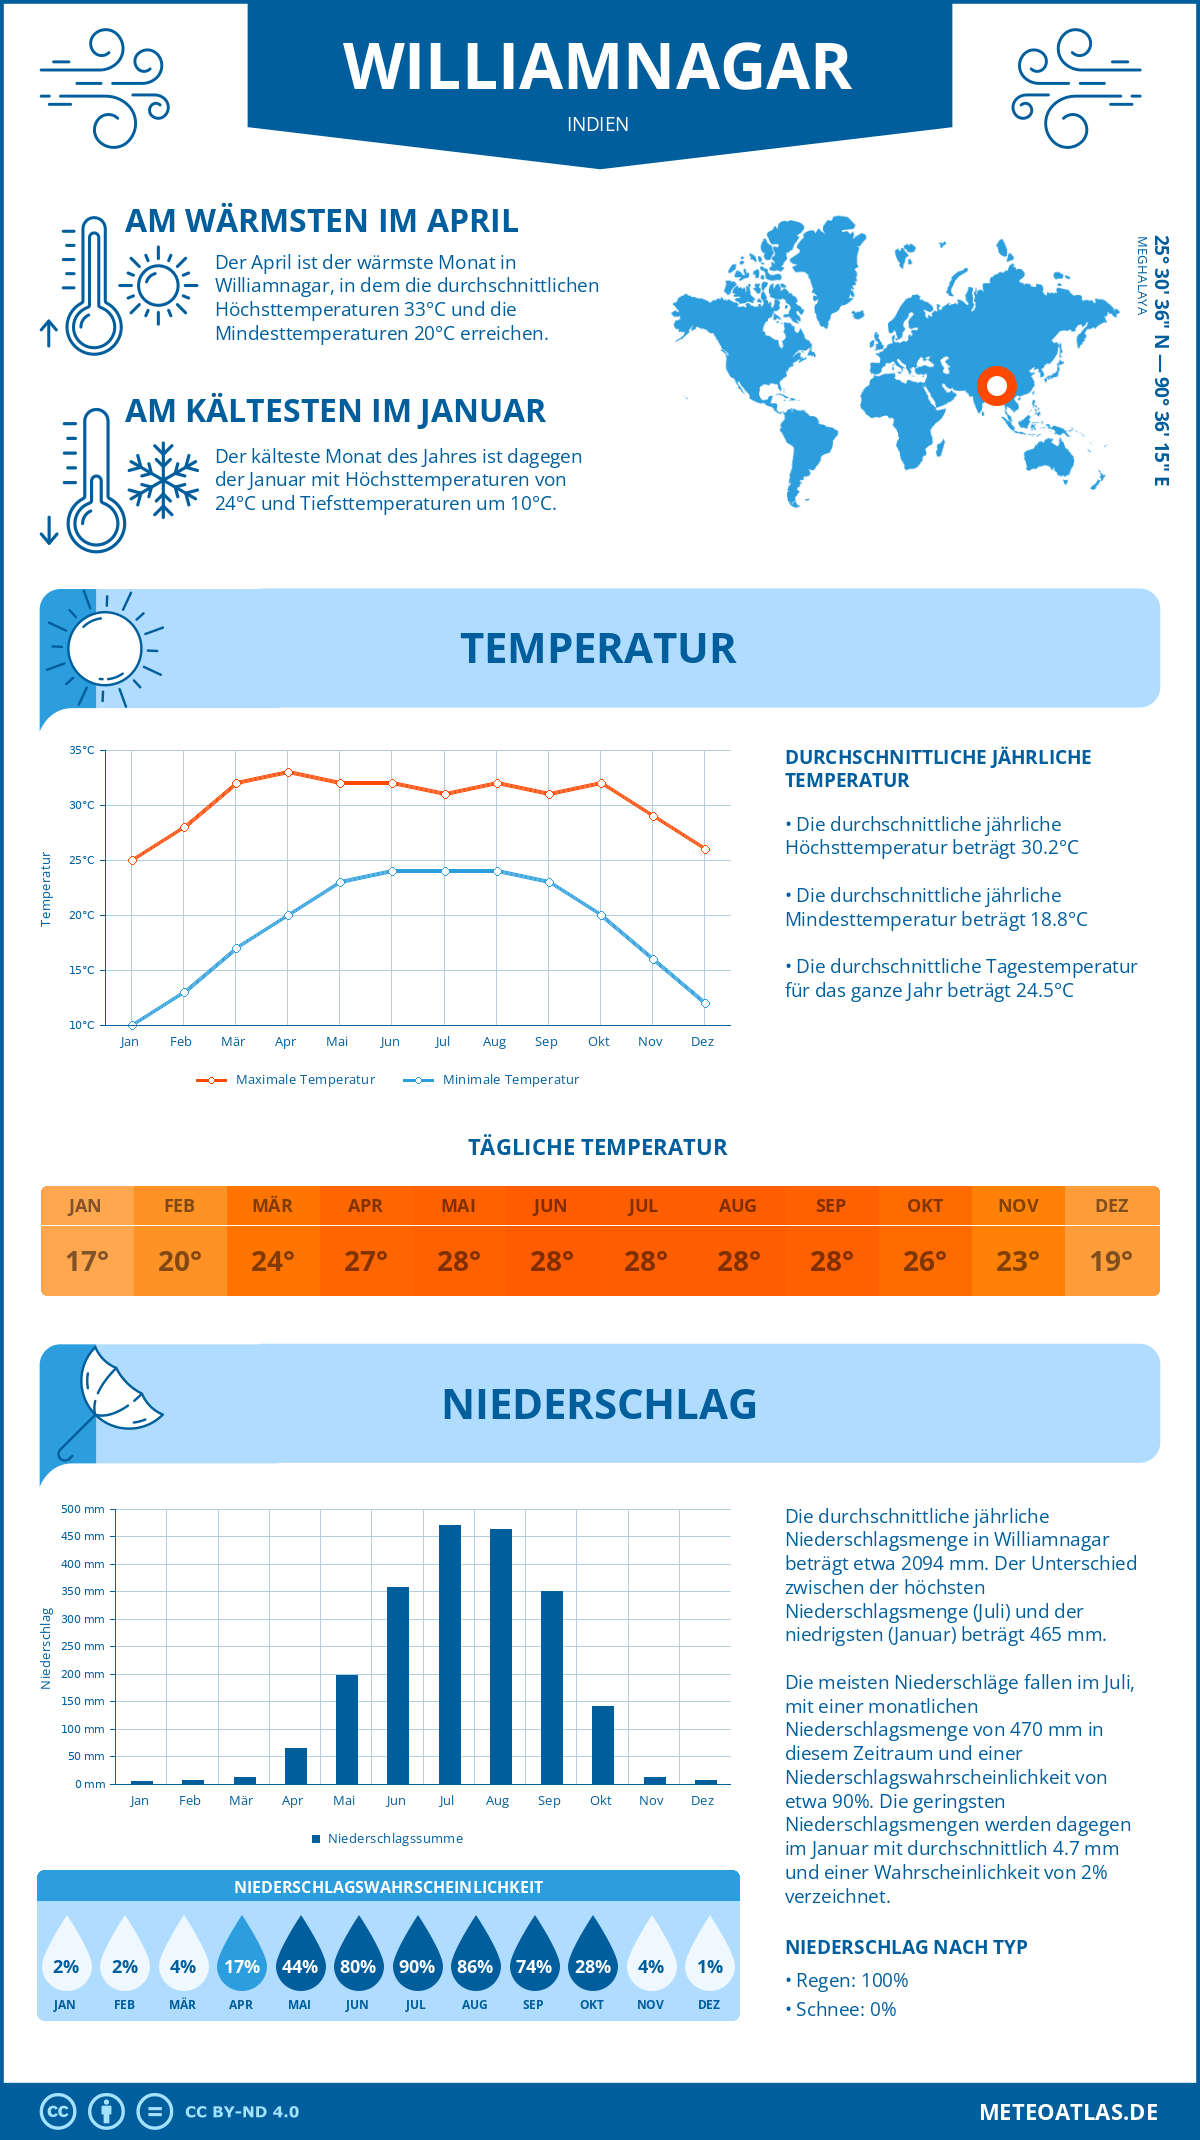 Wetter Williamnagar (Indien) - Temperatur und Niederschlag